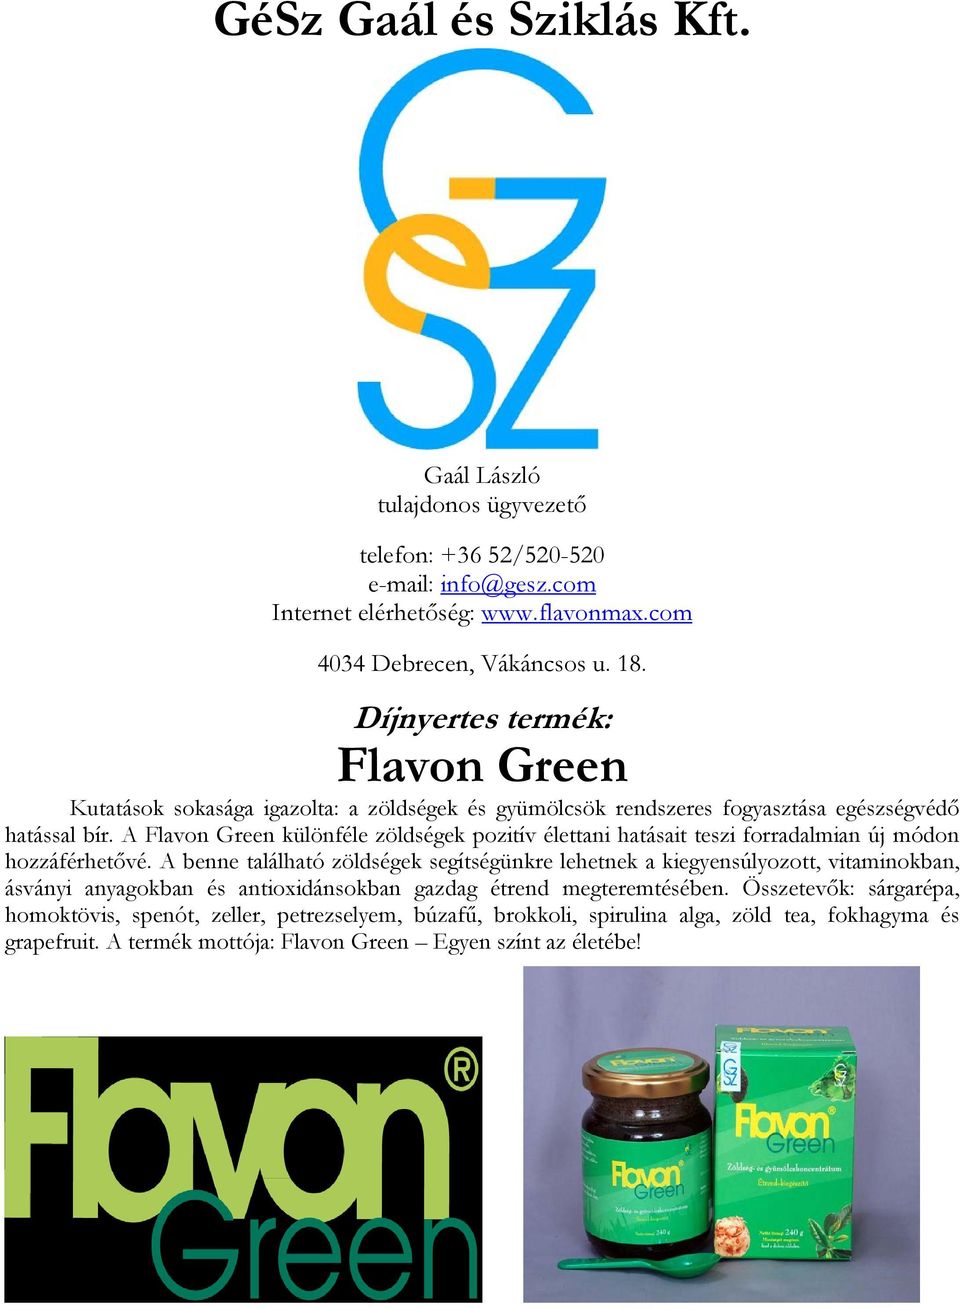 A Flavon Green különféle zöldségek pozitív élettani hatásait teszi forradalmian új módon hozzáférhetővé.